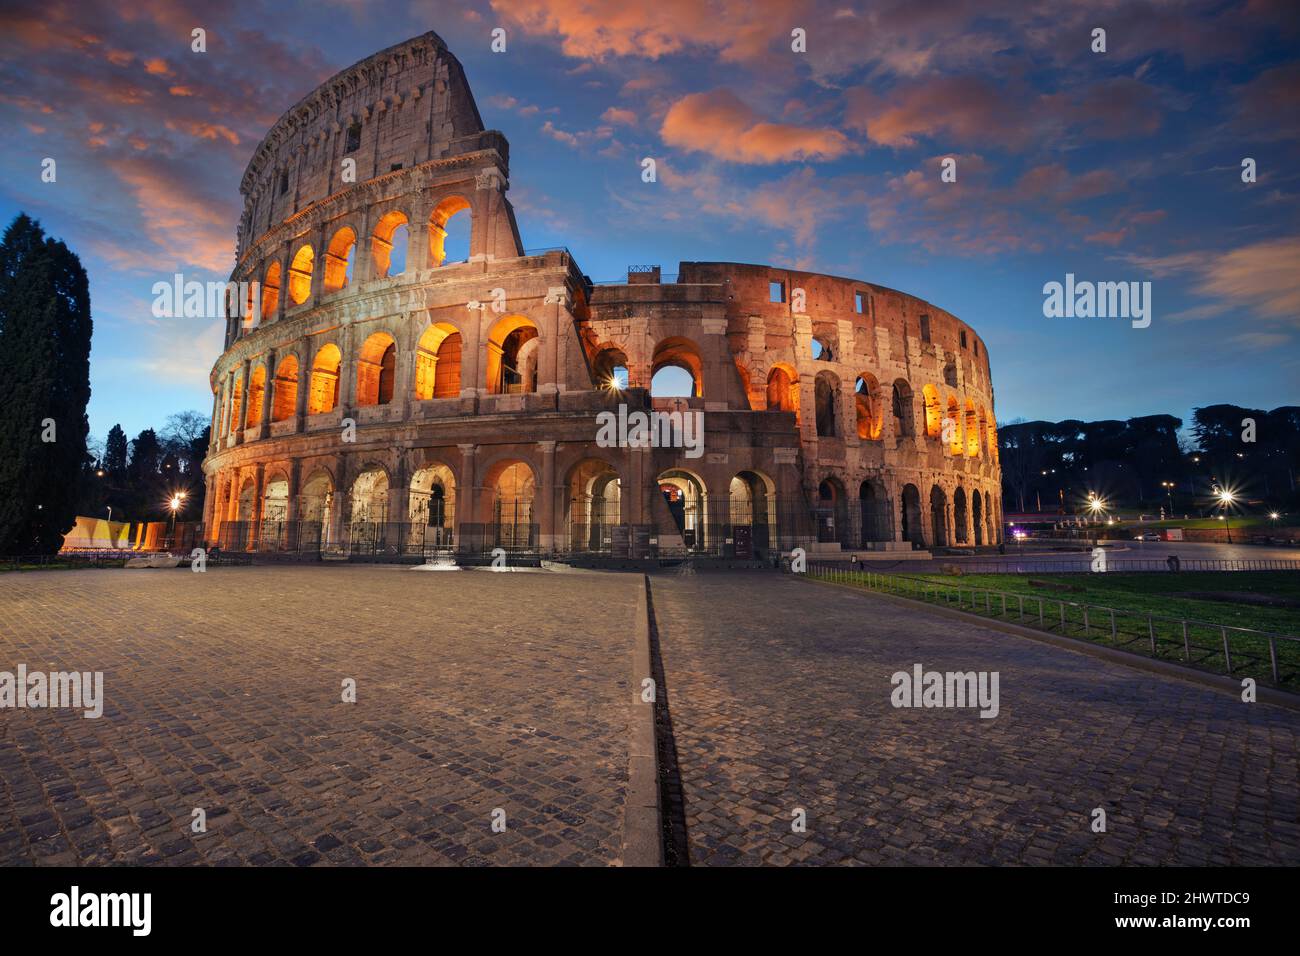 Kolosseum, Rom, Italien. Bild des berühmten Kolosseums in Rom, Italien bei schönem Sonnenaufgang. Stockfoto